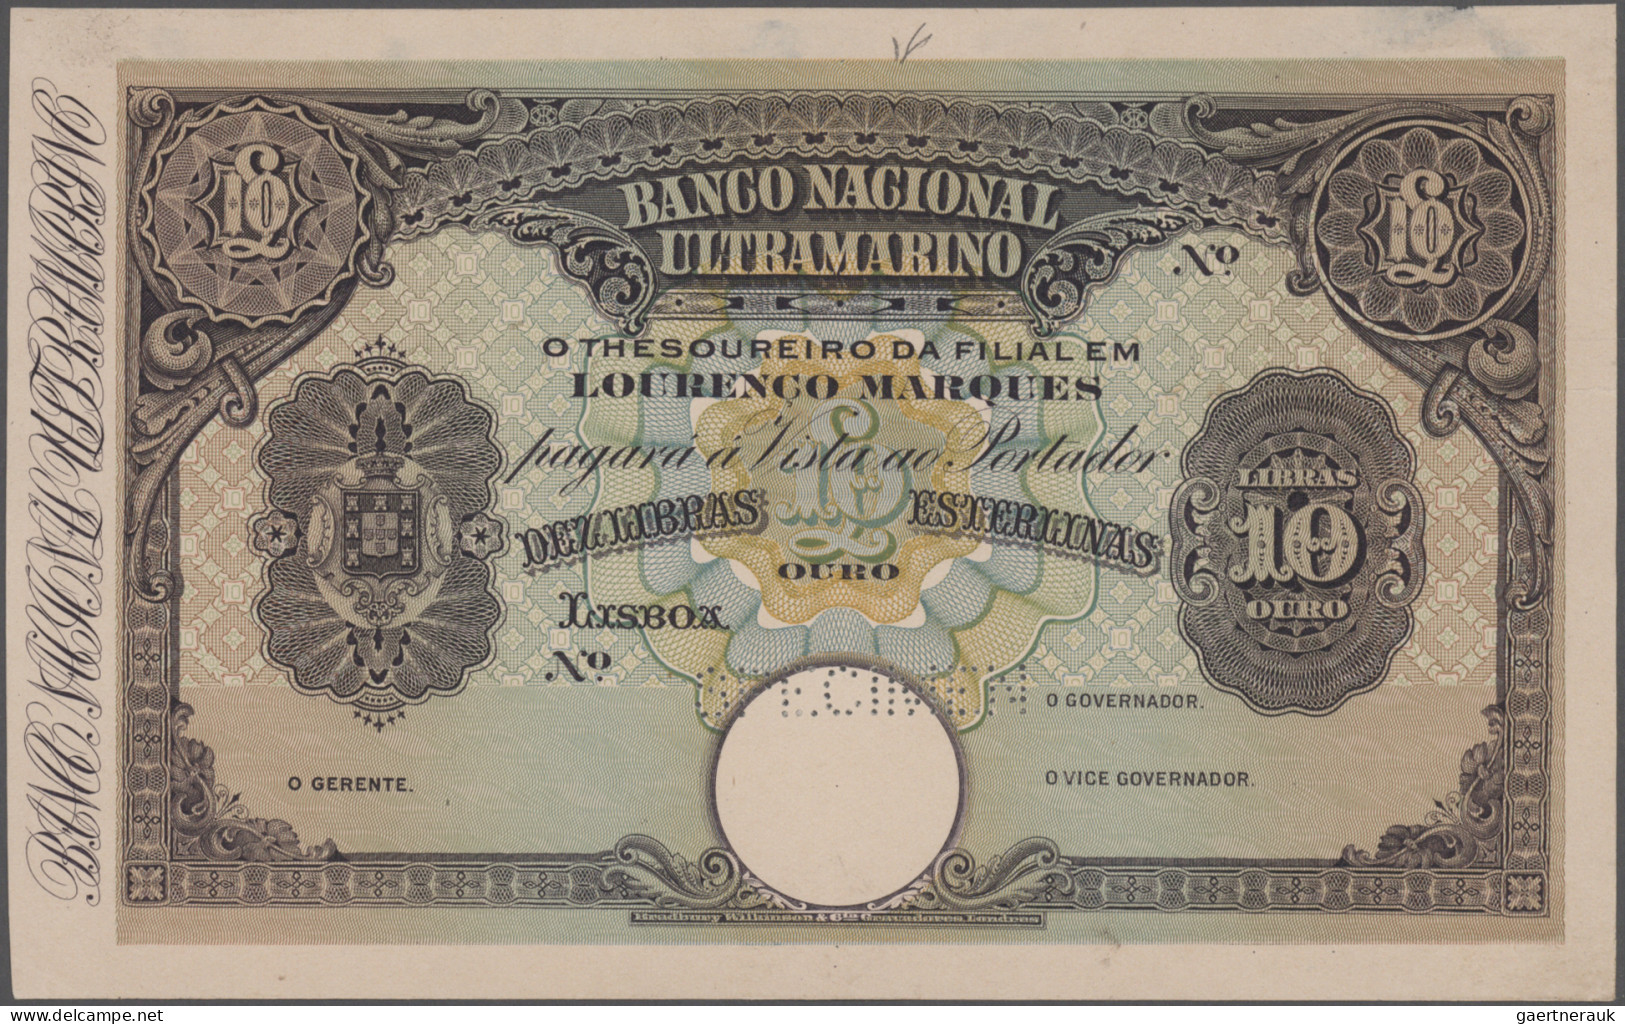 Mozambique: Banco Nacional Ultramarino - LOURENCO MARQUES, 10 Libras Esterlinas - Moçambique